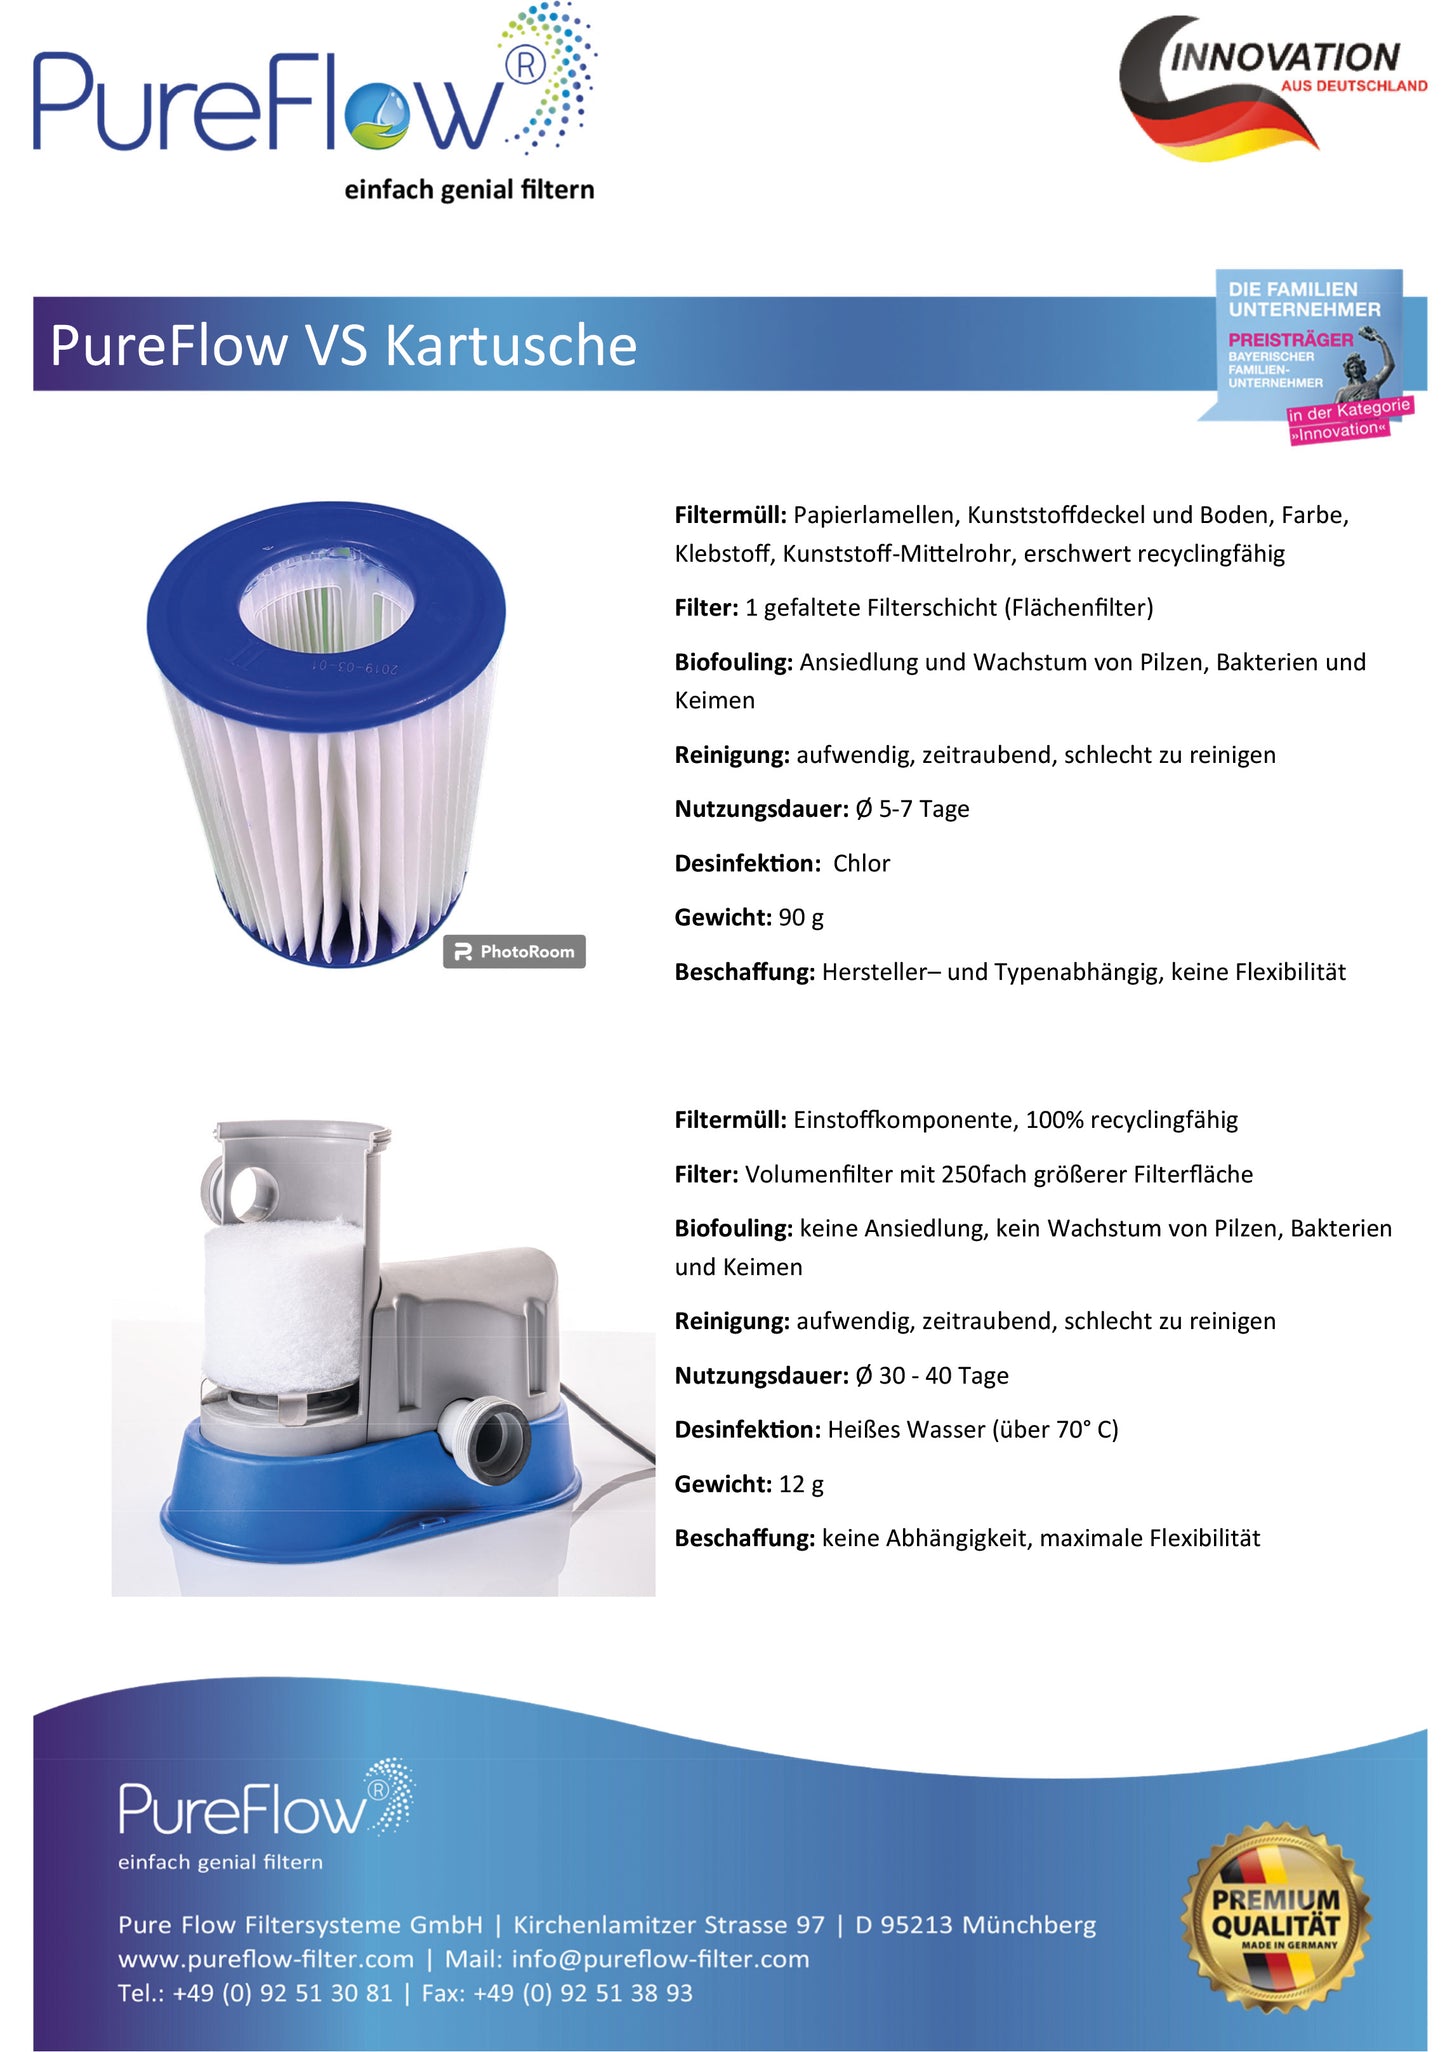 PureFlow CARTRIDGE Filter: Der innovative, waschbare Kartuschenfilter mit max. Filterleistung, Durchströmung und effizienter Filtration. Kompatibel zu Flowclear, Intex, Bestway usw. aber 250fach höheres Filtervolumen. Desinfektion ohne Chlor.